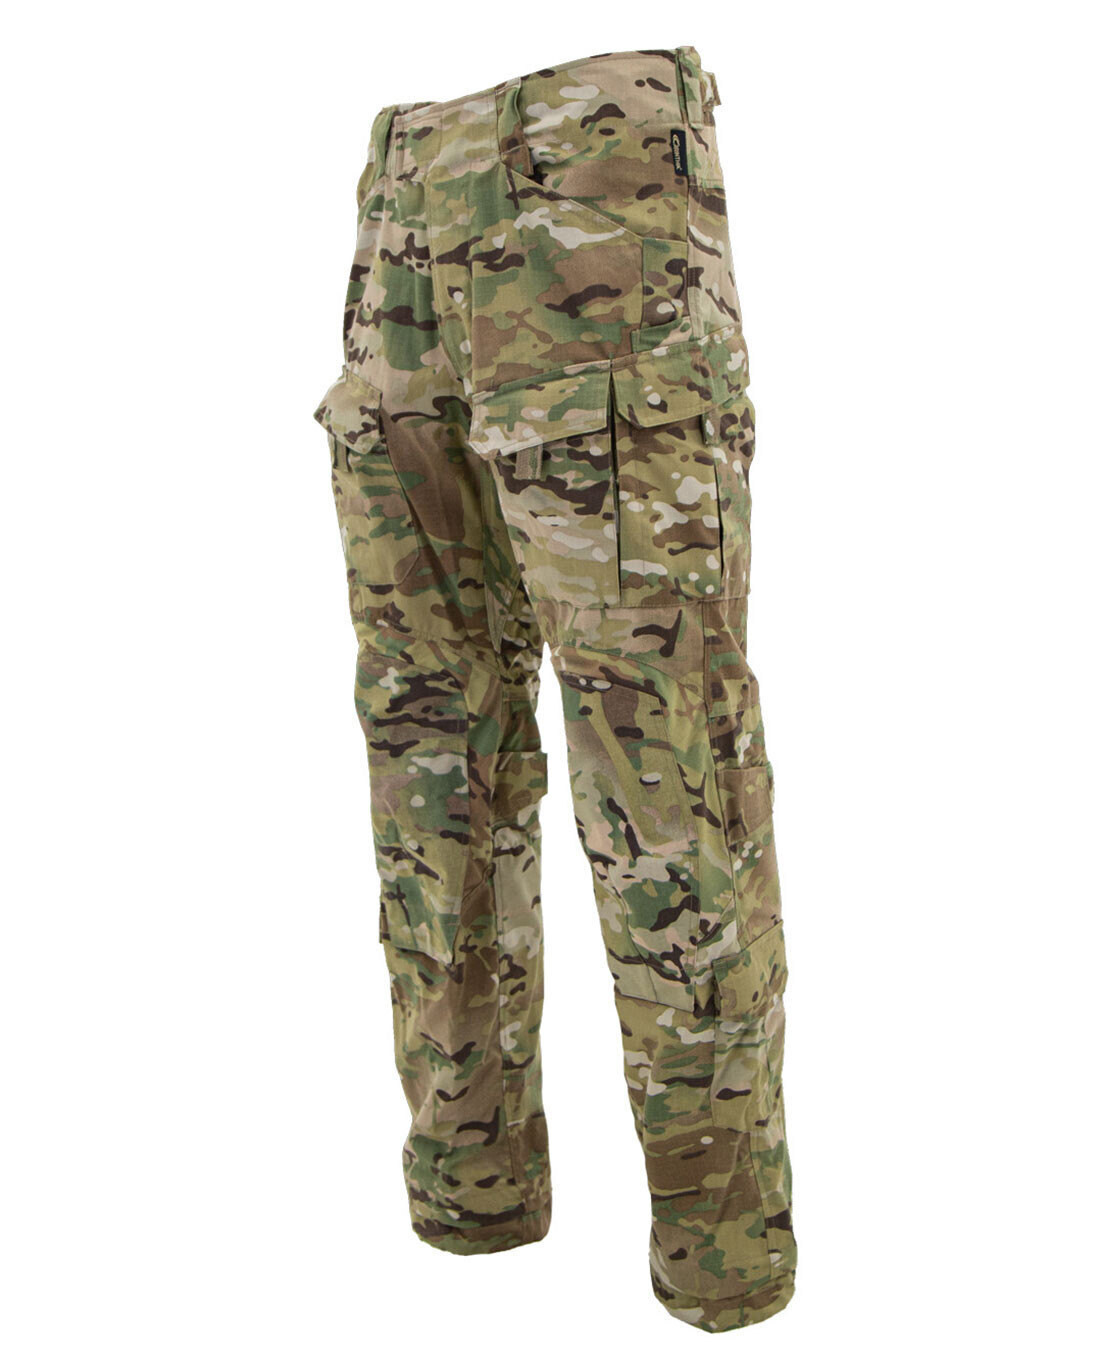 Kalhoty Combat CCT Carinthia® – Multicam® (Barva: Multicam®, Velikost: M)